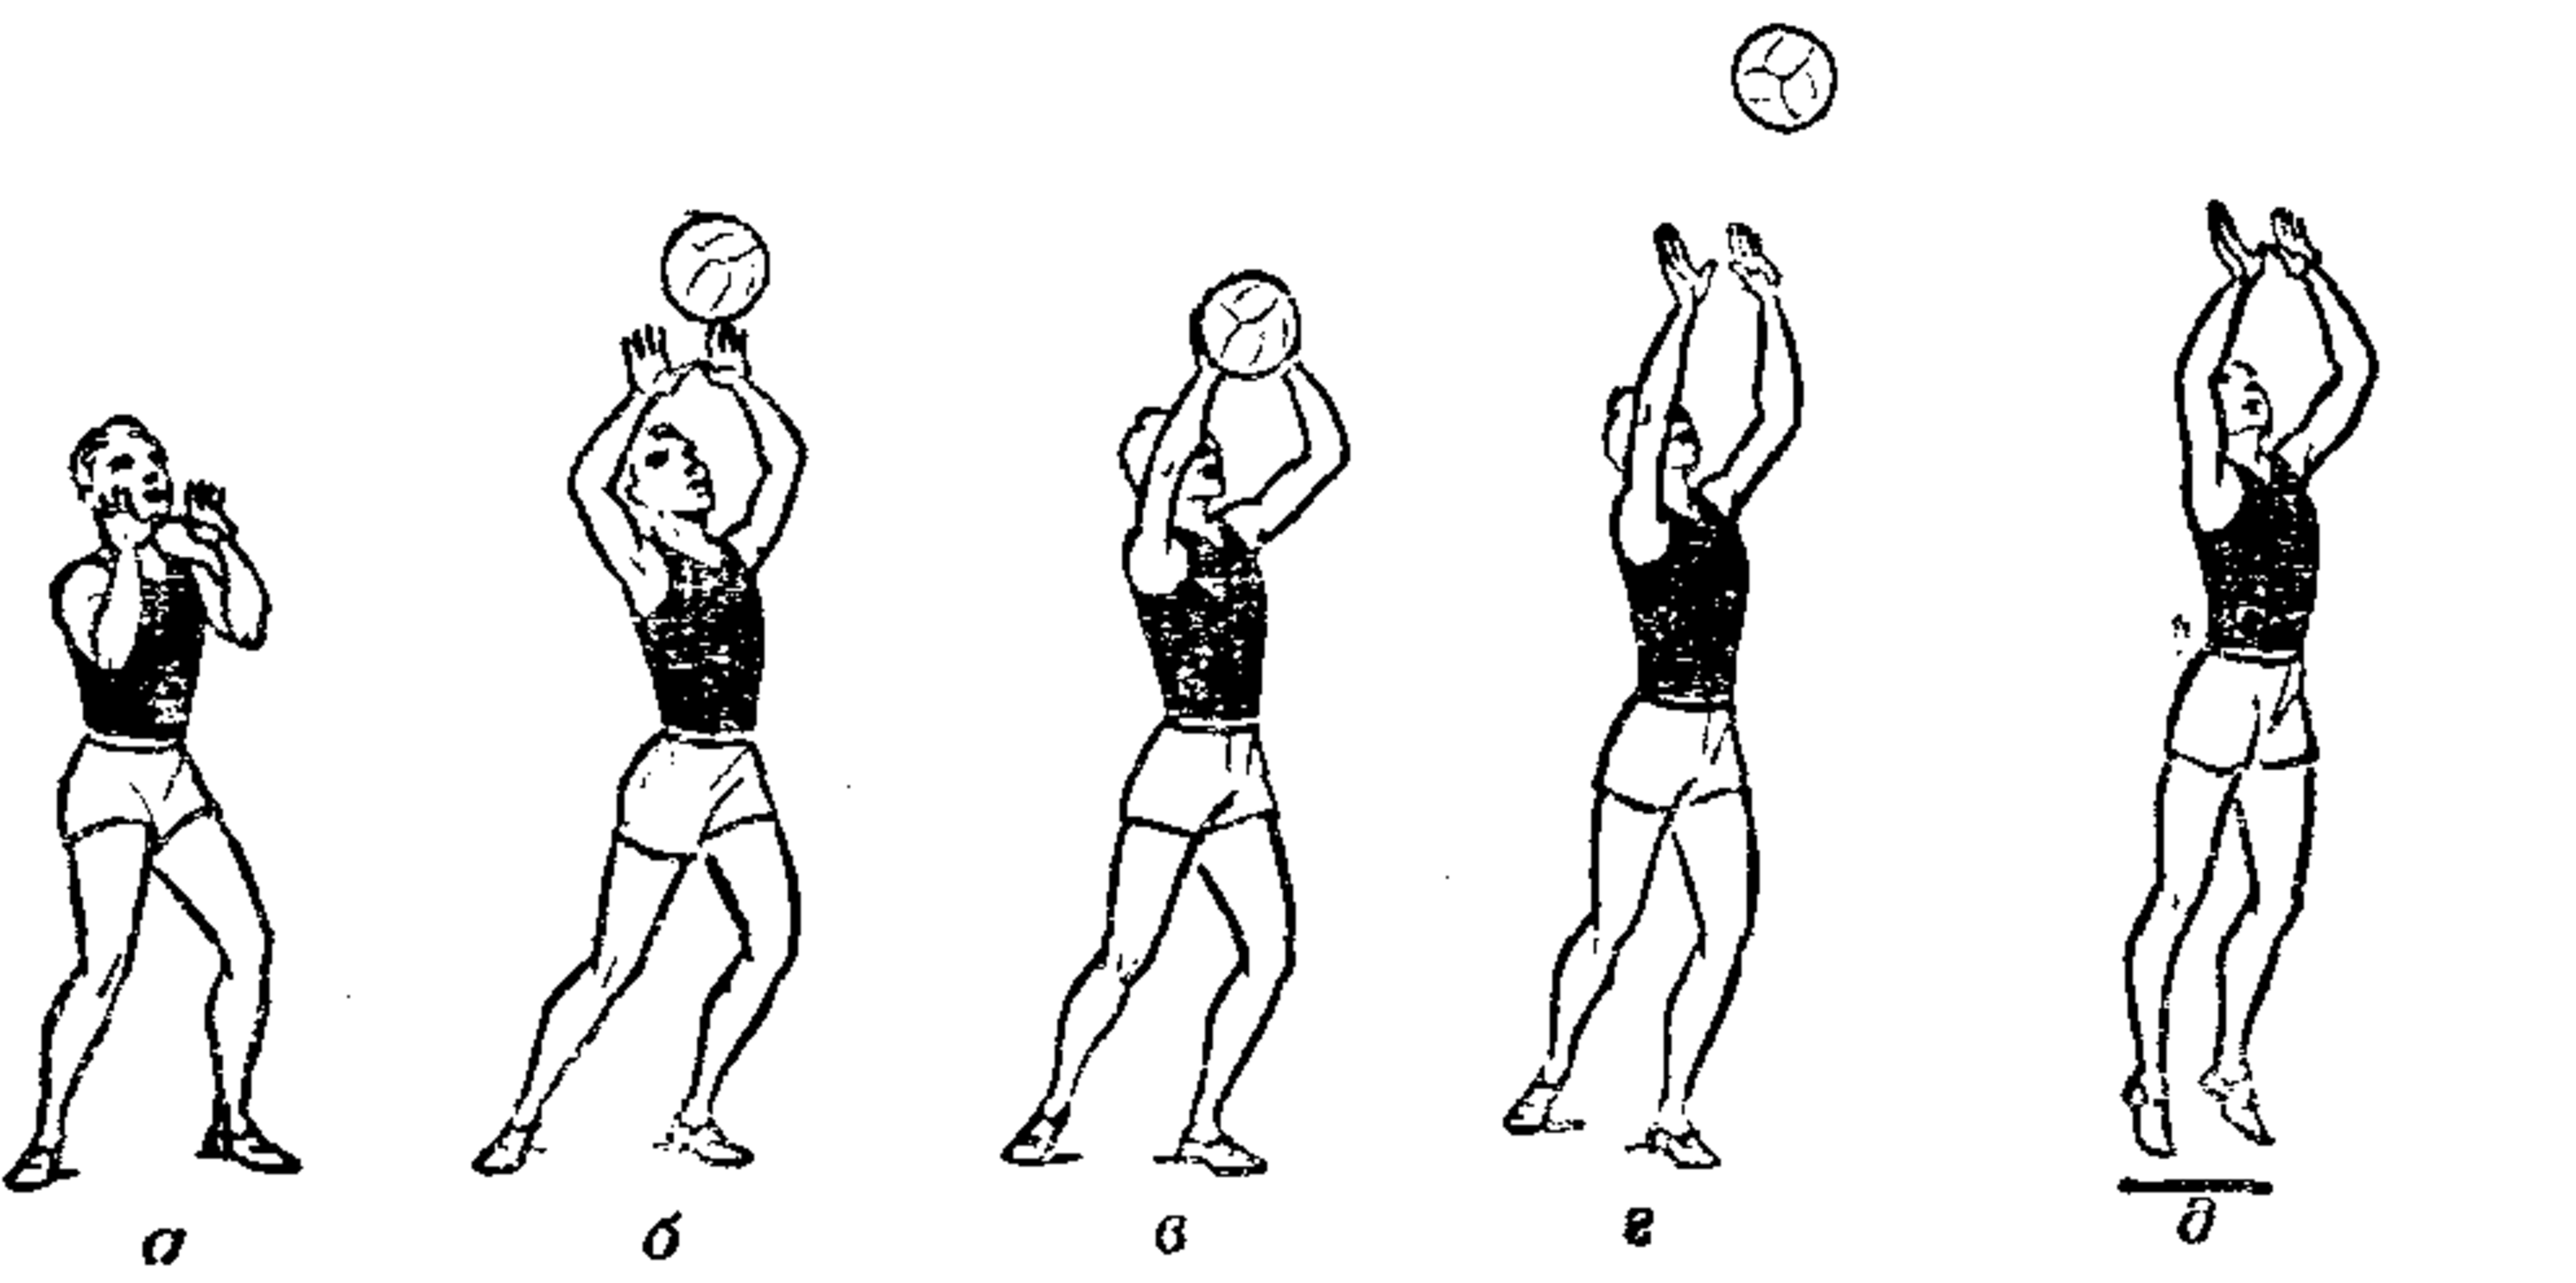 Элементы волейбола передачи. Волейбол техника верхняя передача в волейболе. Техника передачи мяча в волейболе. Волейбол верхний прием и передача мяча техника. Техника приема и передачи мяча сверху двумя руками в волейболе.